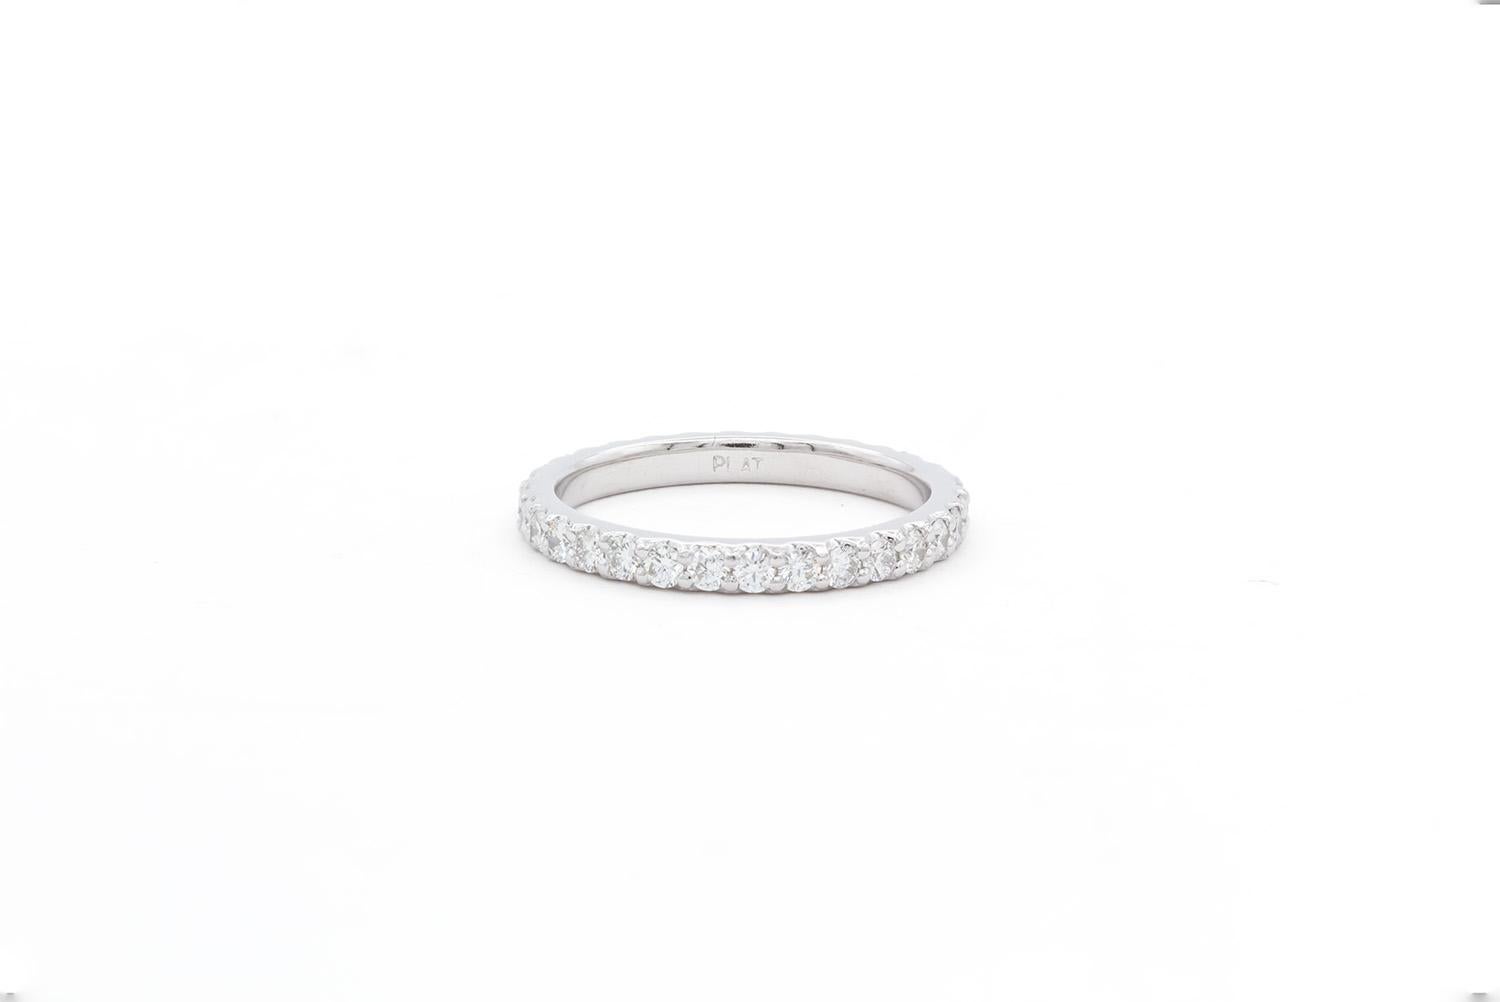 Wir freuen uns, dieses Platin Rund Brillant Diamant Eternity U Pave Hochzeit Band anbieten zu können. Dieser wunderschöne Ehering besteht aus einem Ewigkeitsring mit geschätzten 0,90ctw F-G/VS-SI runden Diamanten im Brillantschliff, die alle in